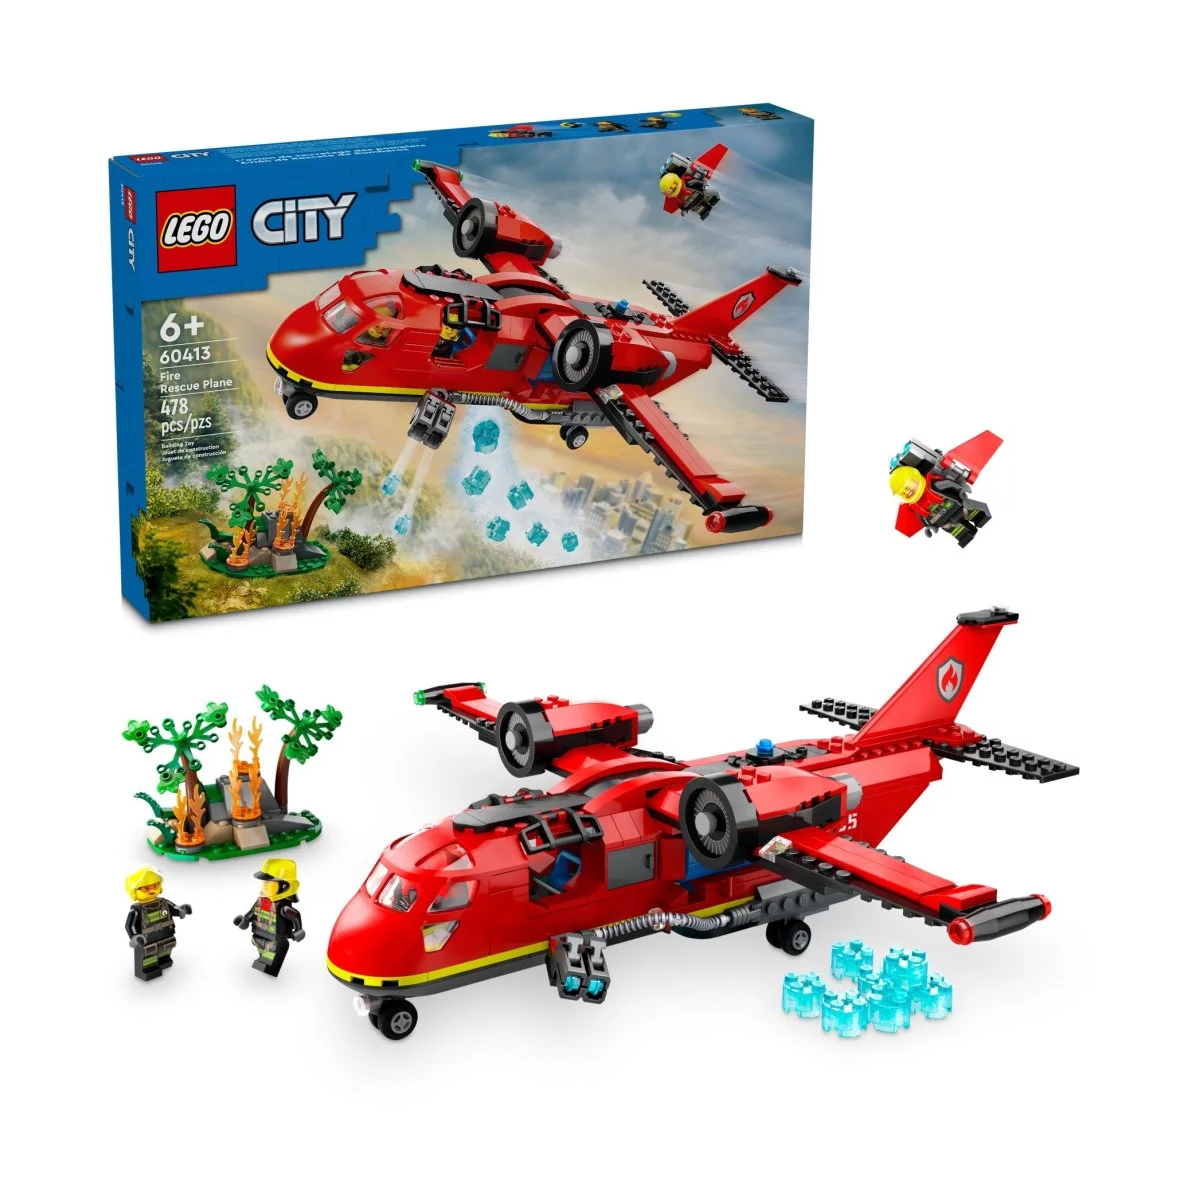 Конструктор Lego City Fire Rescue Plane 60413, 478 деталей раскройте внутренний пилот вашего ребенка с помощью ultimate самолет из пеноматериала launch идеальная катапульта игрушка самолет для детей